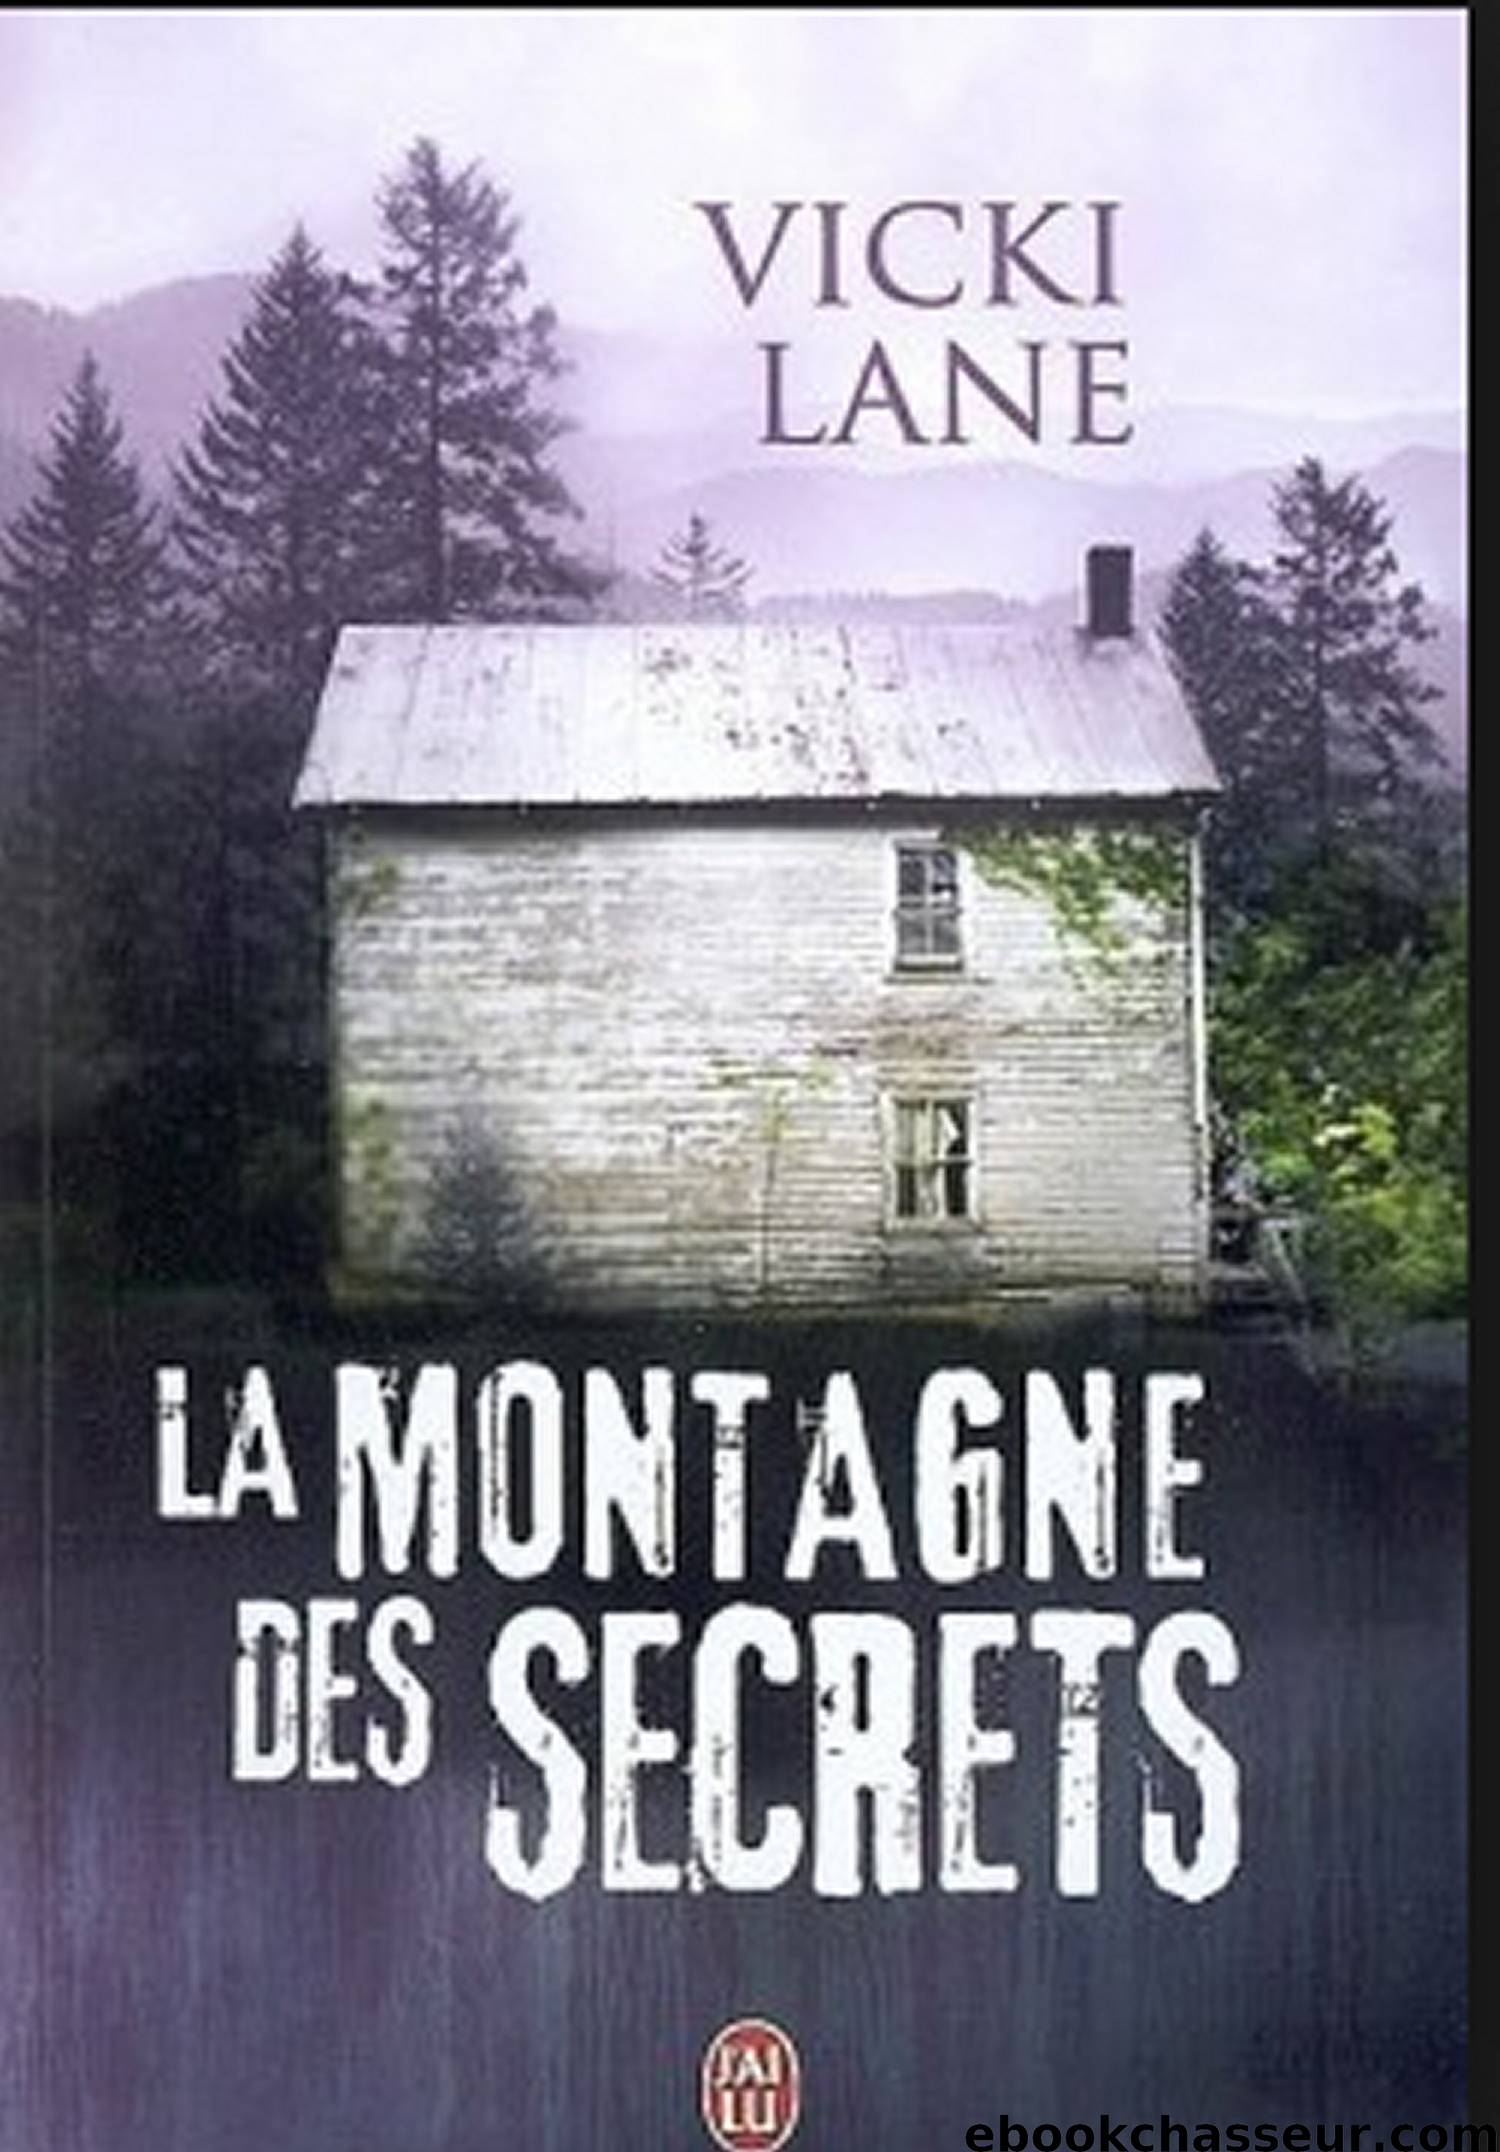 La montagne des secrets by Vicki Lane